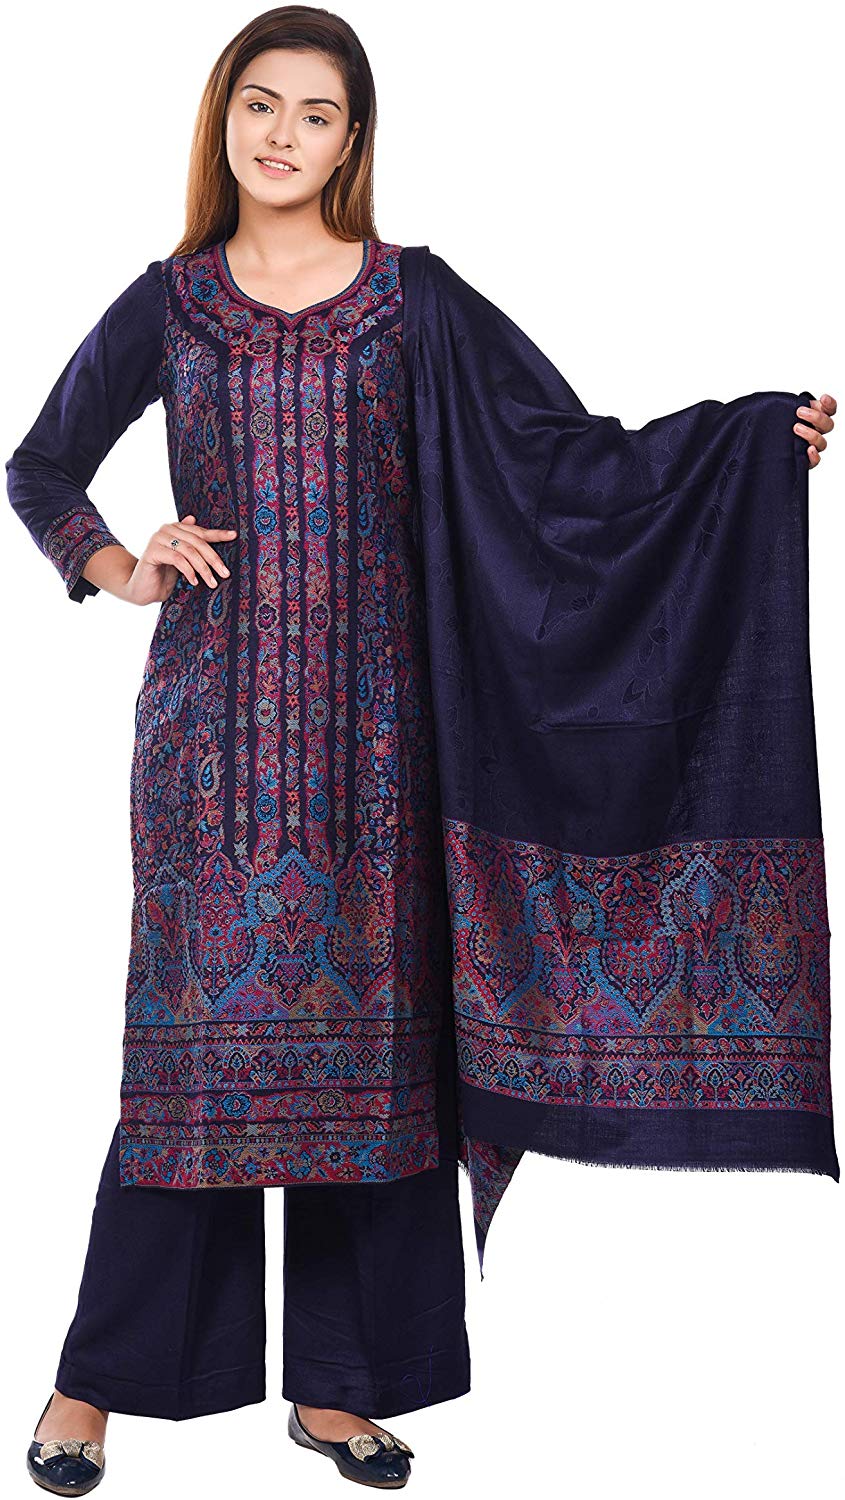 फैंसी पंजाबी GARAM WOOLAN सूट 2019 डिज़ाइन | लुधियाना होलसेल |Ludhiana  Ladies suit Wholesale Market - YouTube